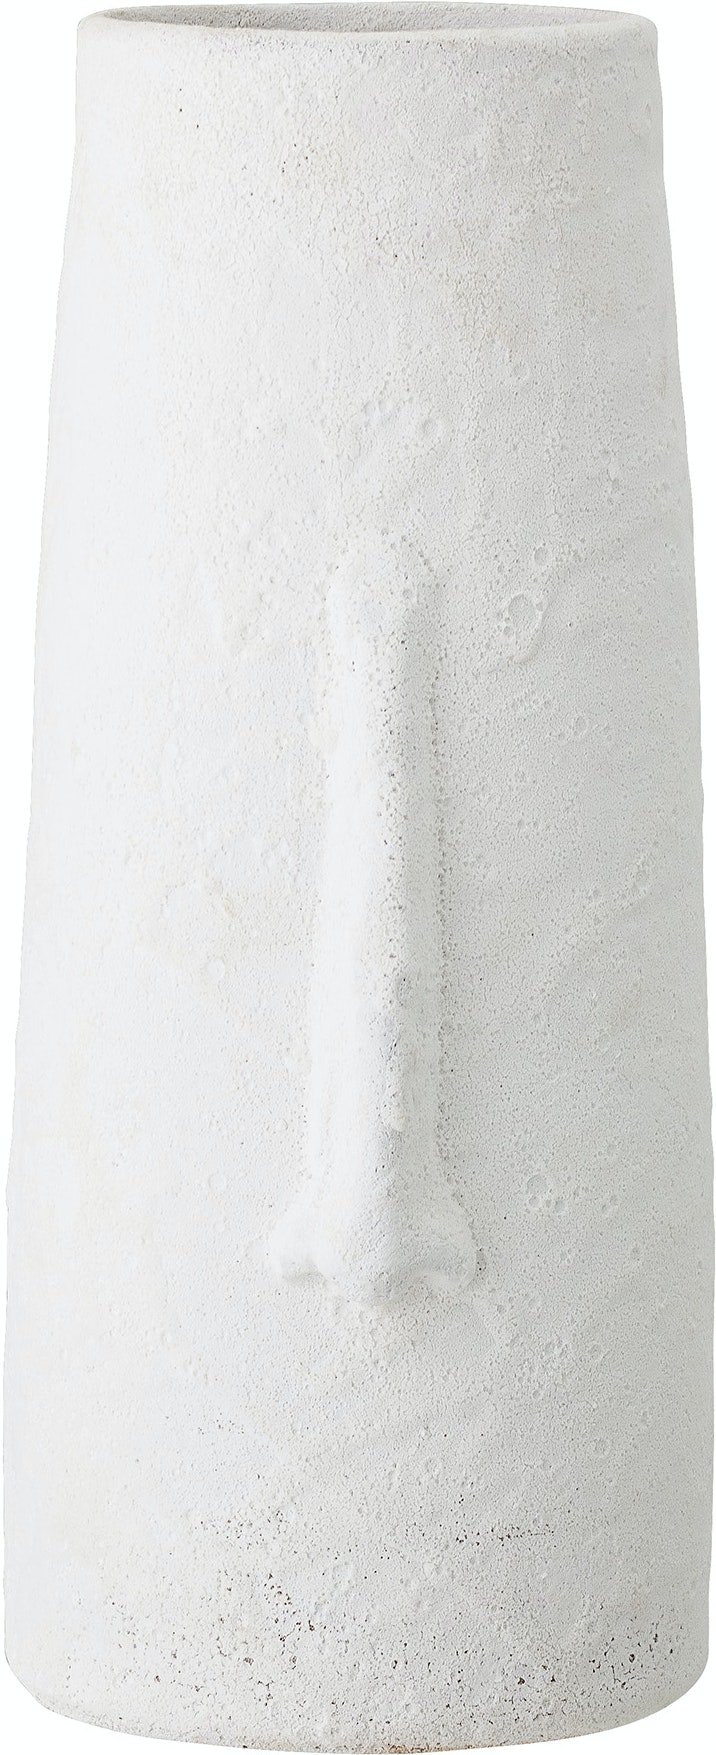 7: Berican, Deko Vase by Bloomingville (D: 17.5 cm. H: 40 cm., Hvid)